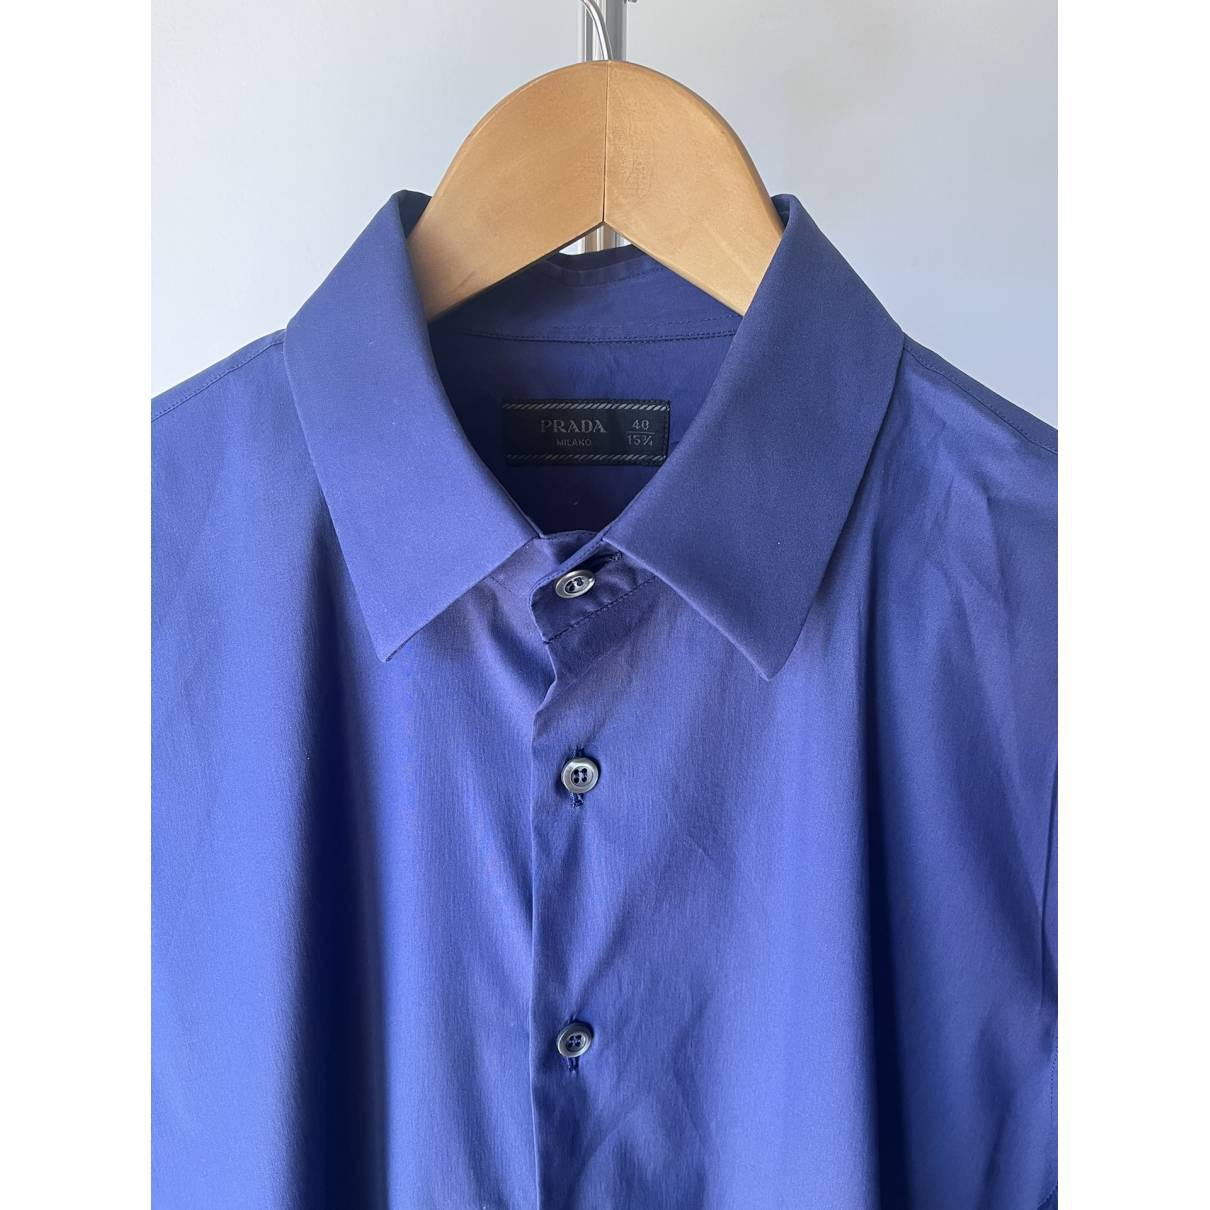 Shirt Prada Blue size 40 EU (tour de cou / collar) in Cotton